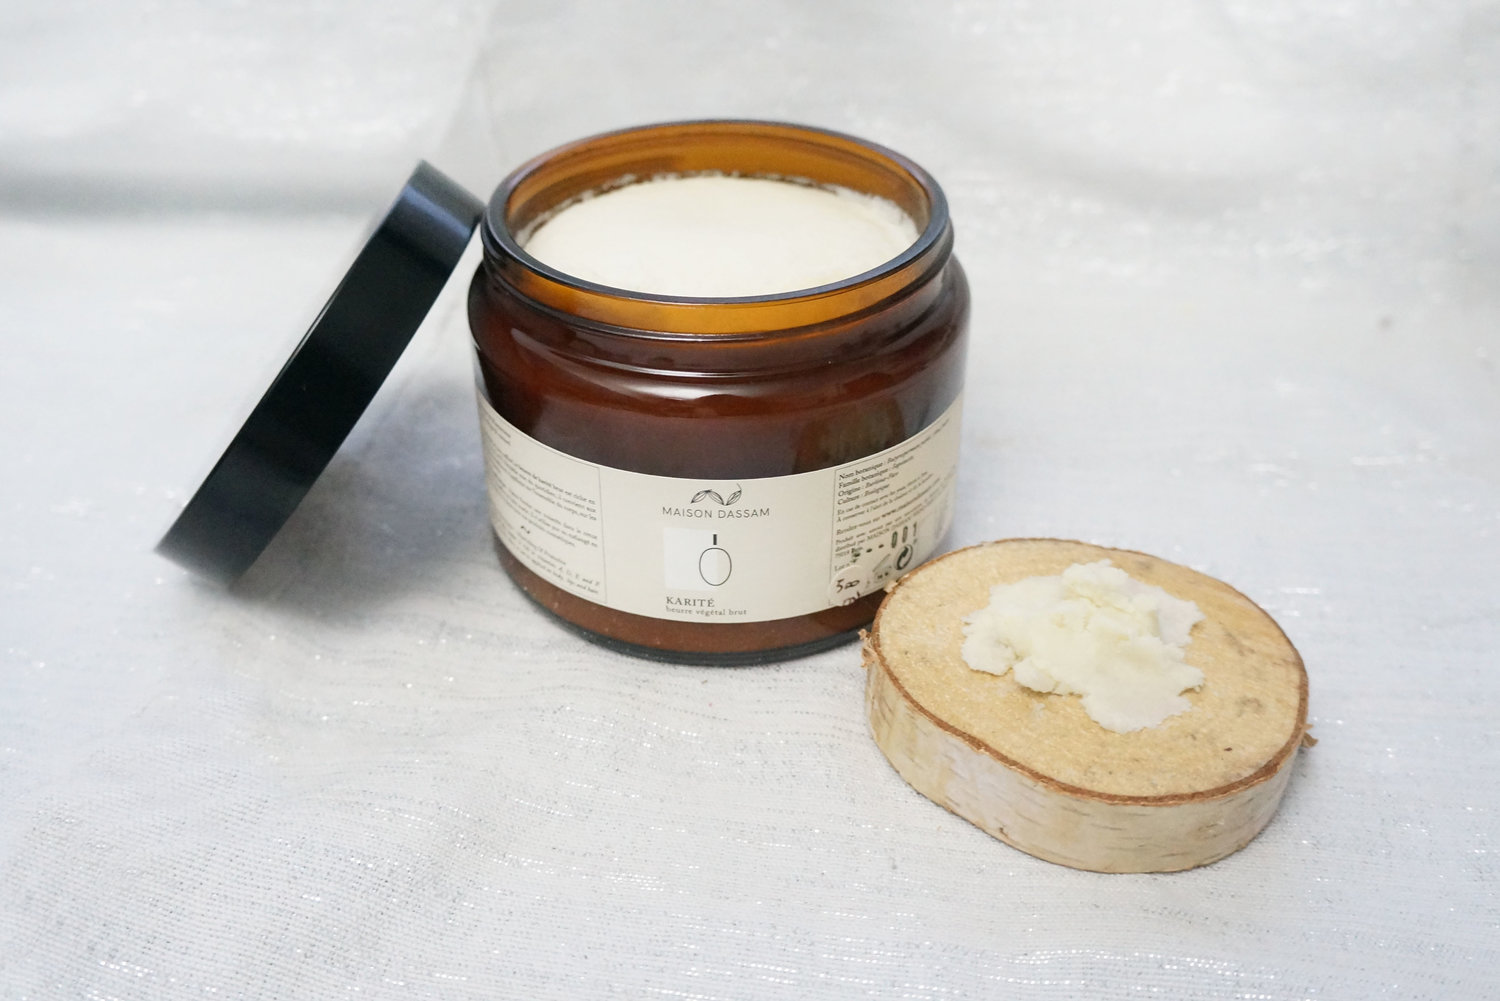 Beurre de karité brut — Maison Dassam